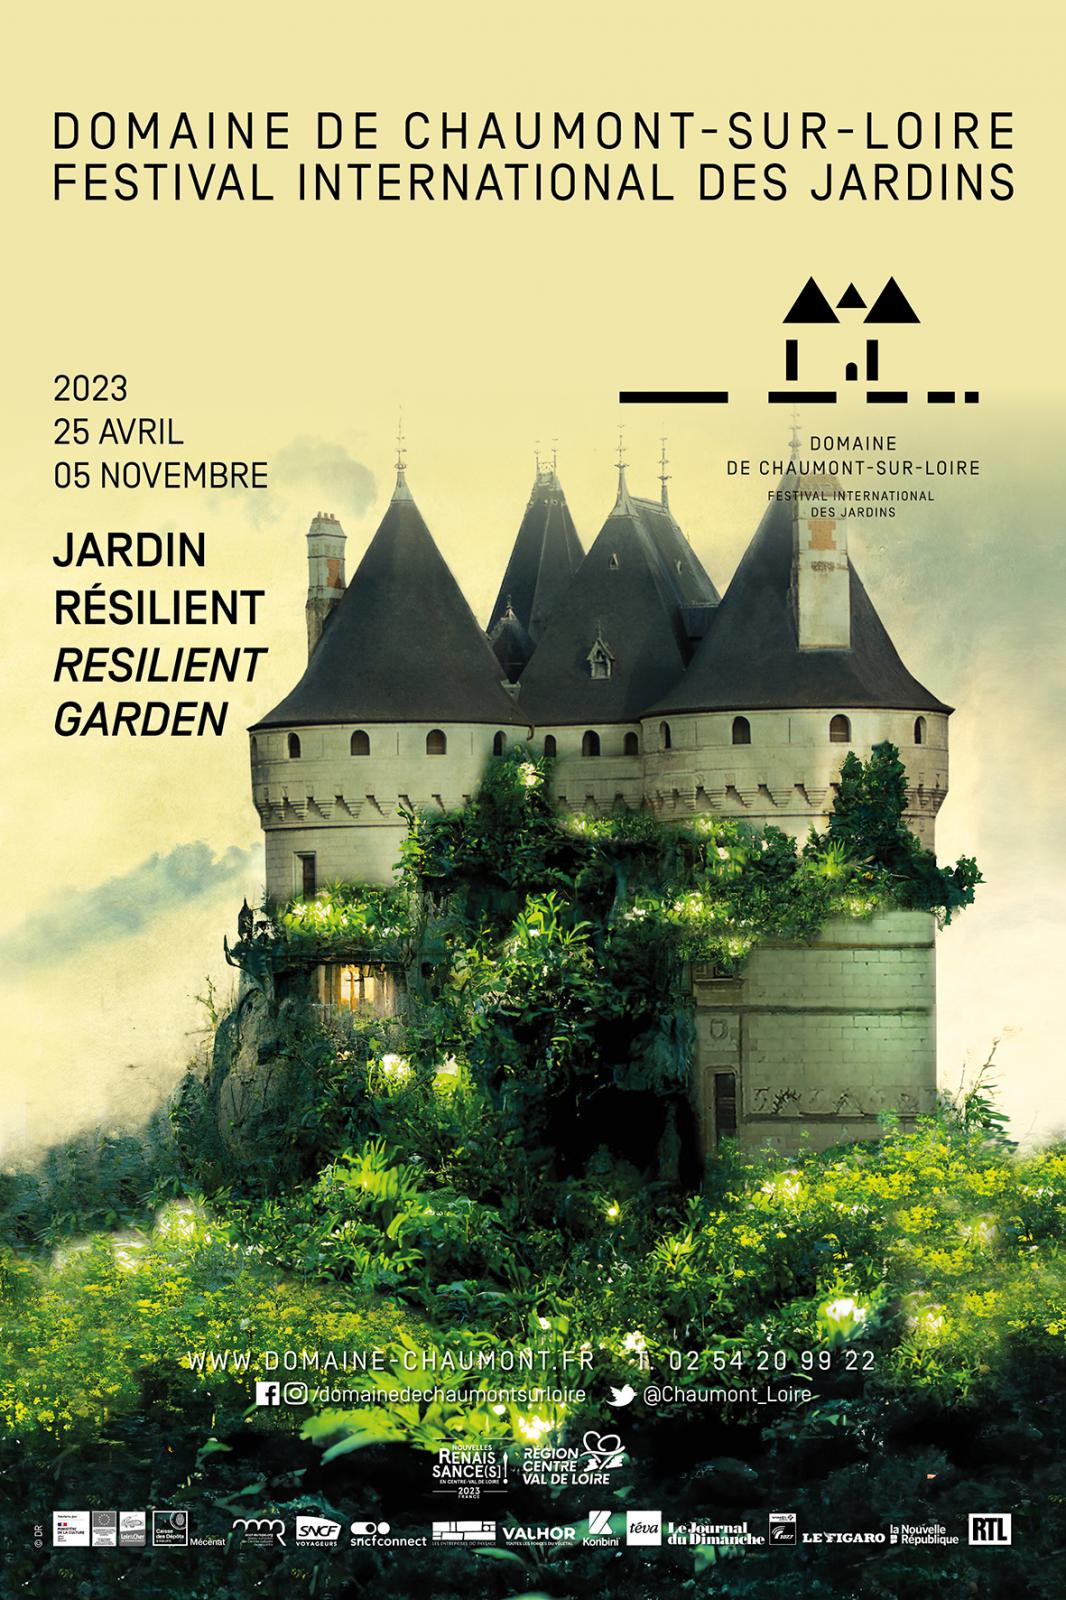 Édition 2023 - Jardin résilient | Domaine de Chaumont-sur-Loire